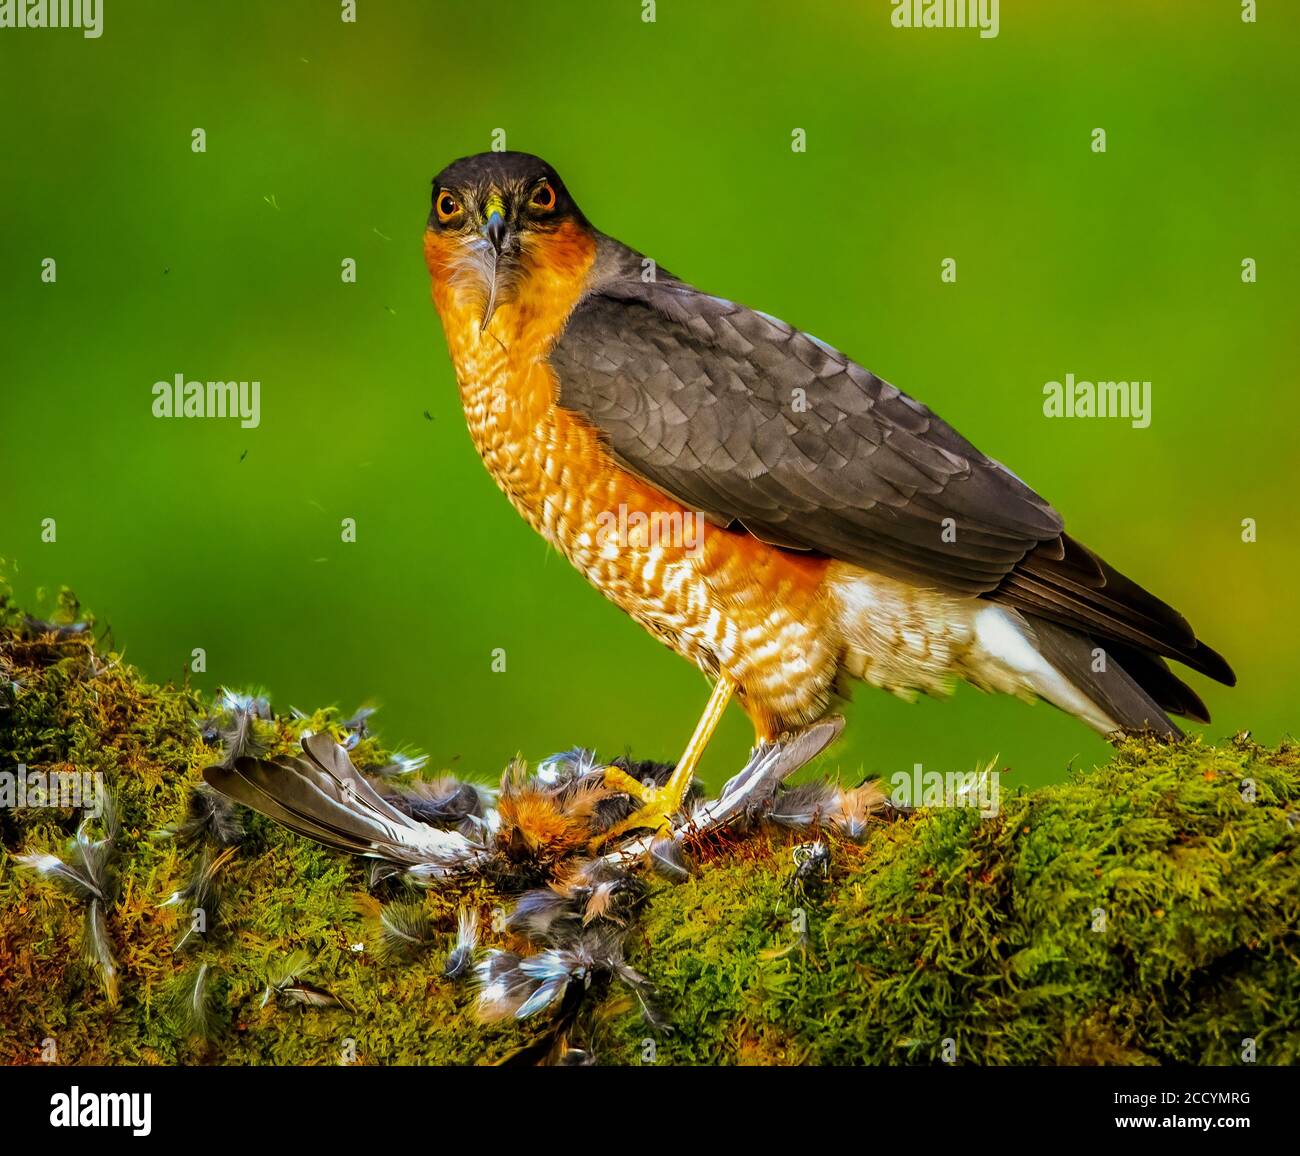 Female Sparrow Hawk feeding on Prey Stock Photo